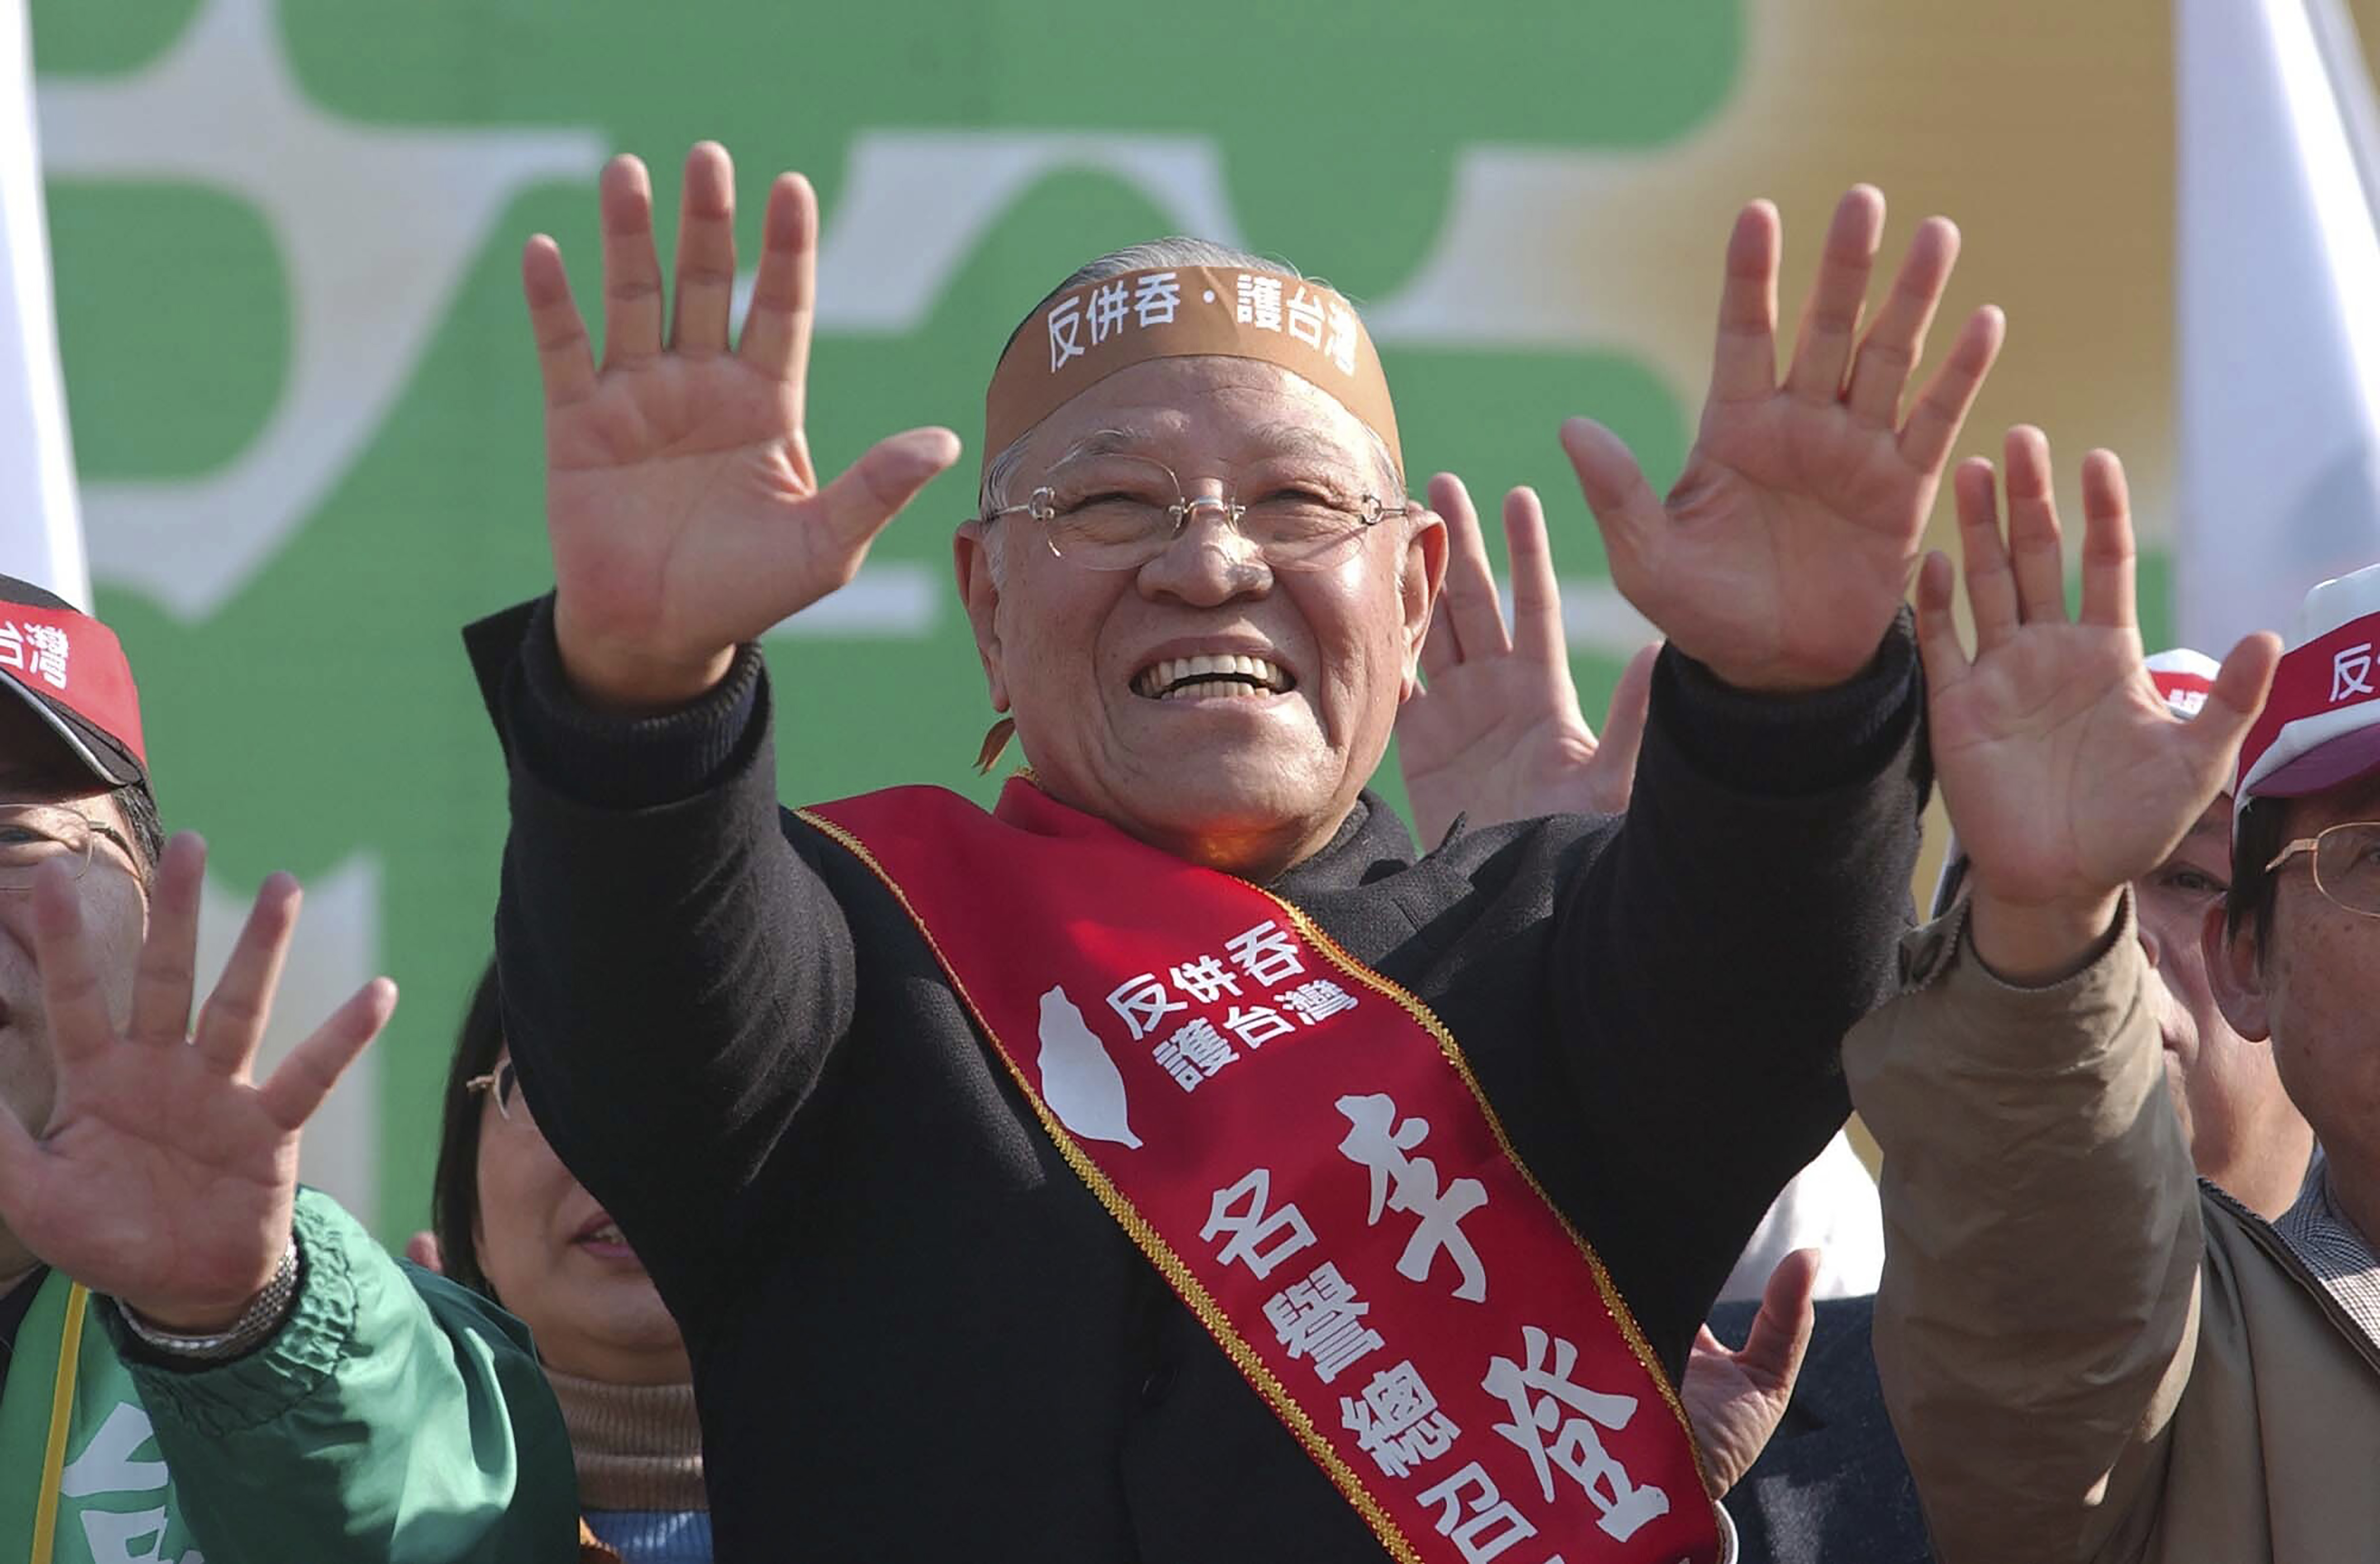 2005年3月6日，针对中国人大讨论“反分裂法”，李登辉出席在高雄举行的示威集会，期间举起双手作势“推开中国大陆”，并高喊“反对兼并，保护台湾”的口号。（美联社照片）